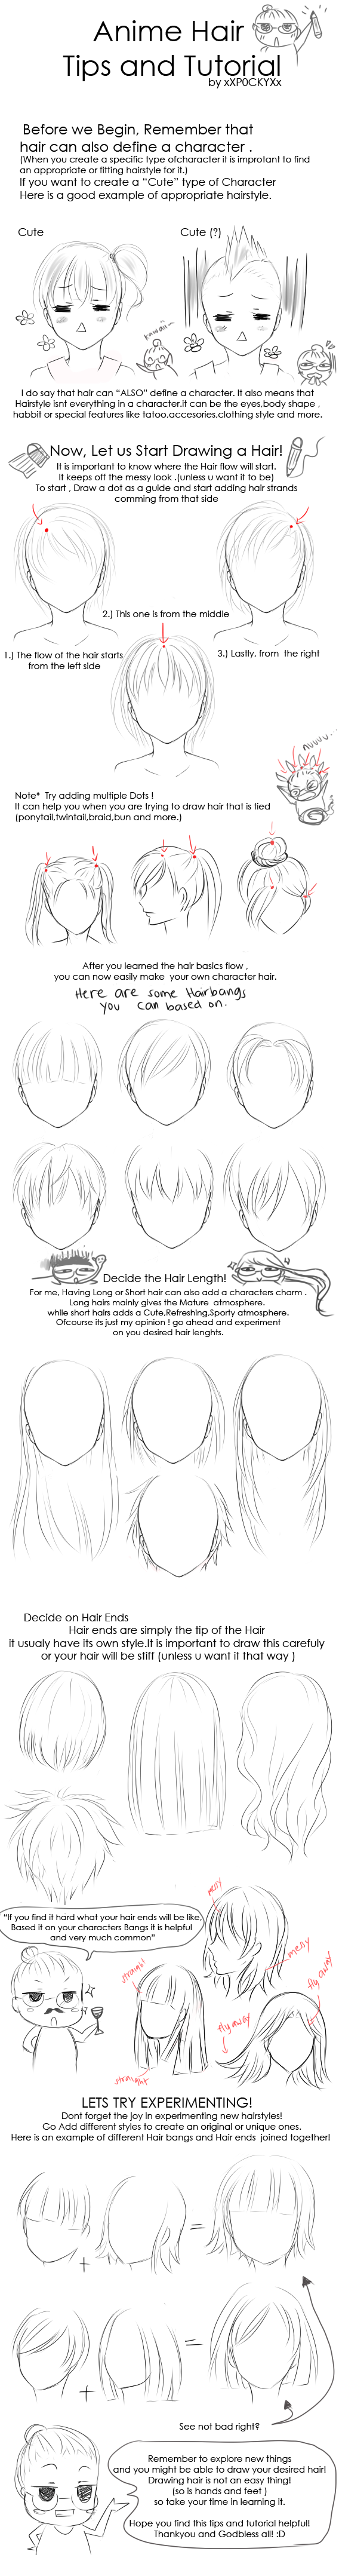 Anime Hair Tips and Tutorial by xXP0CKYXx on DeviantArt